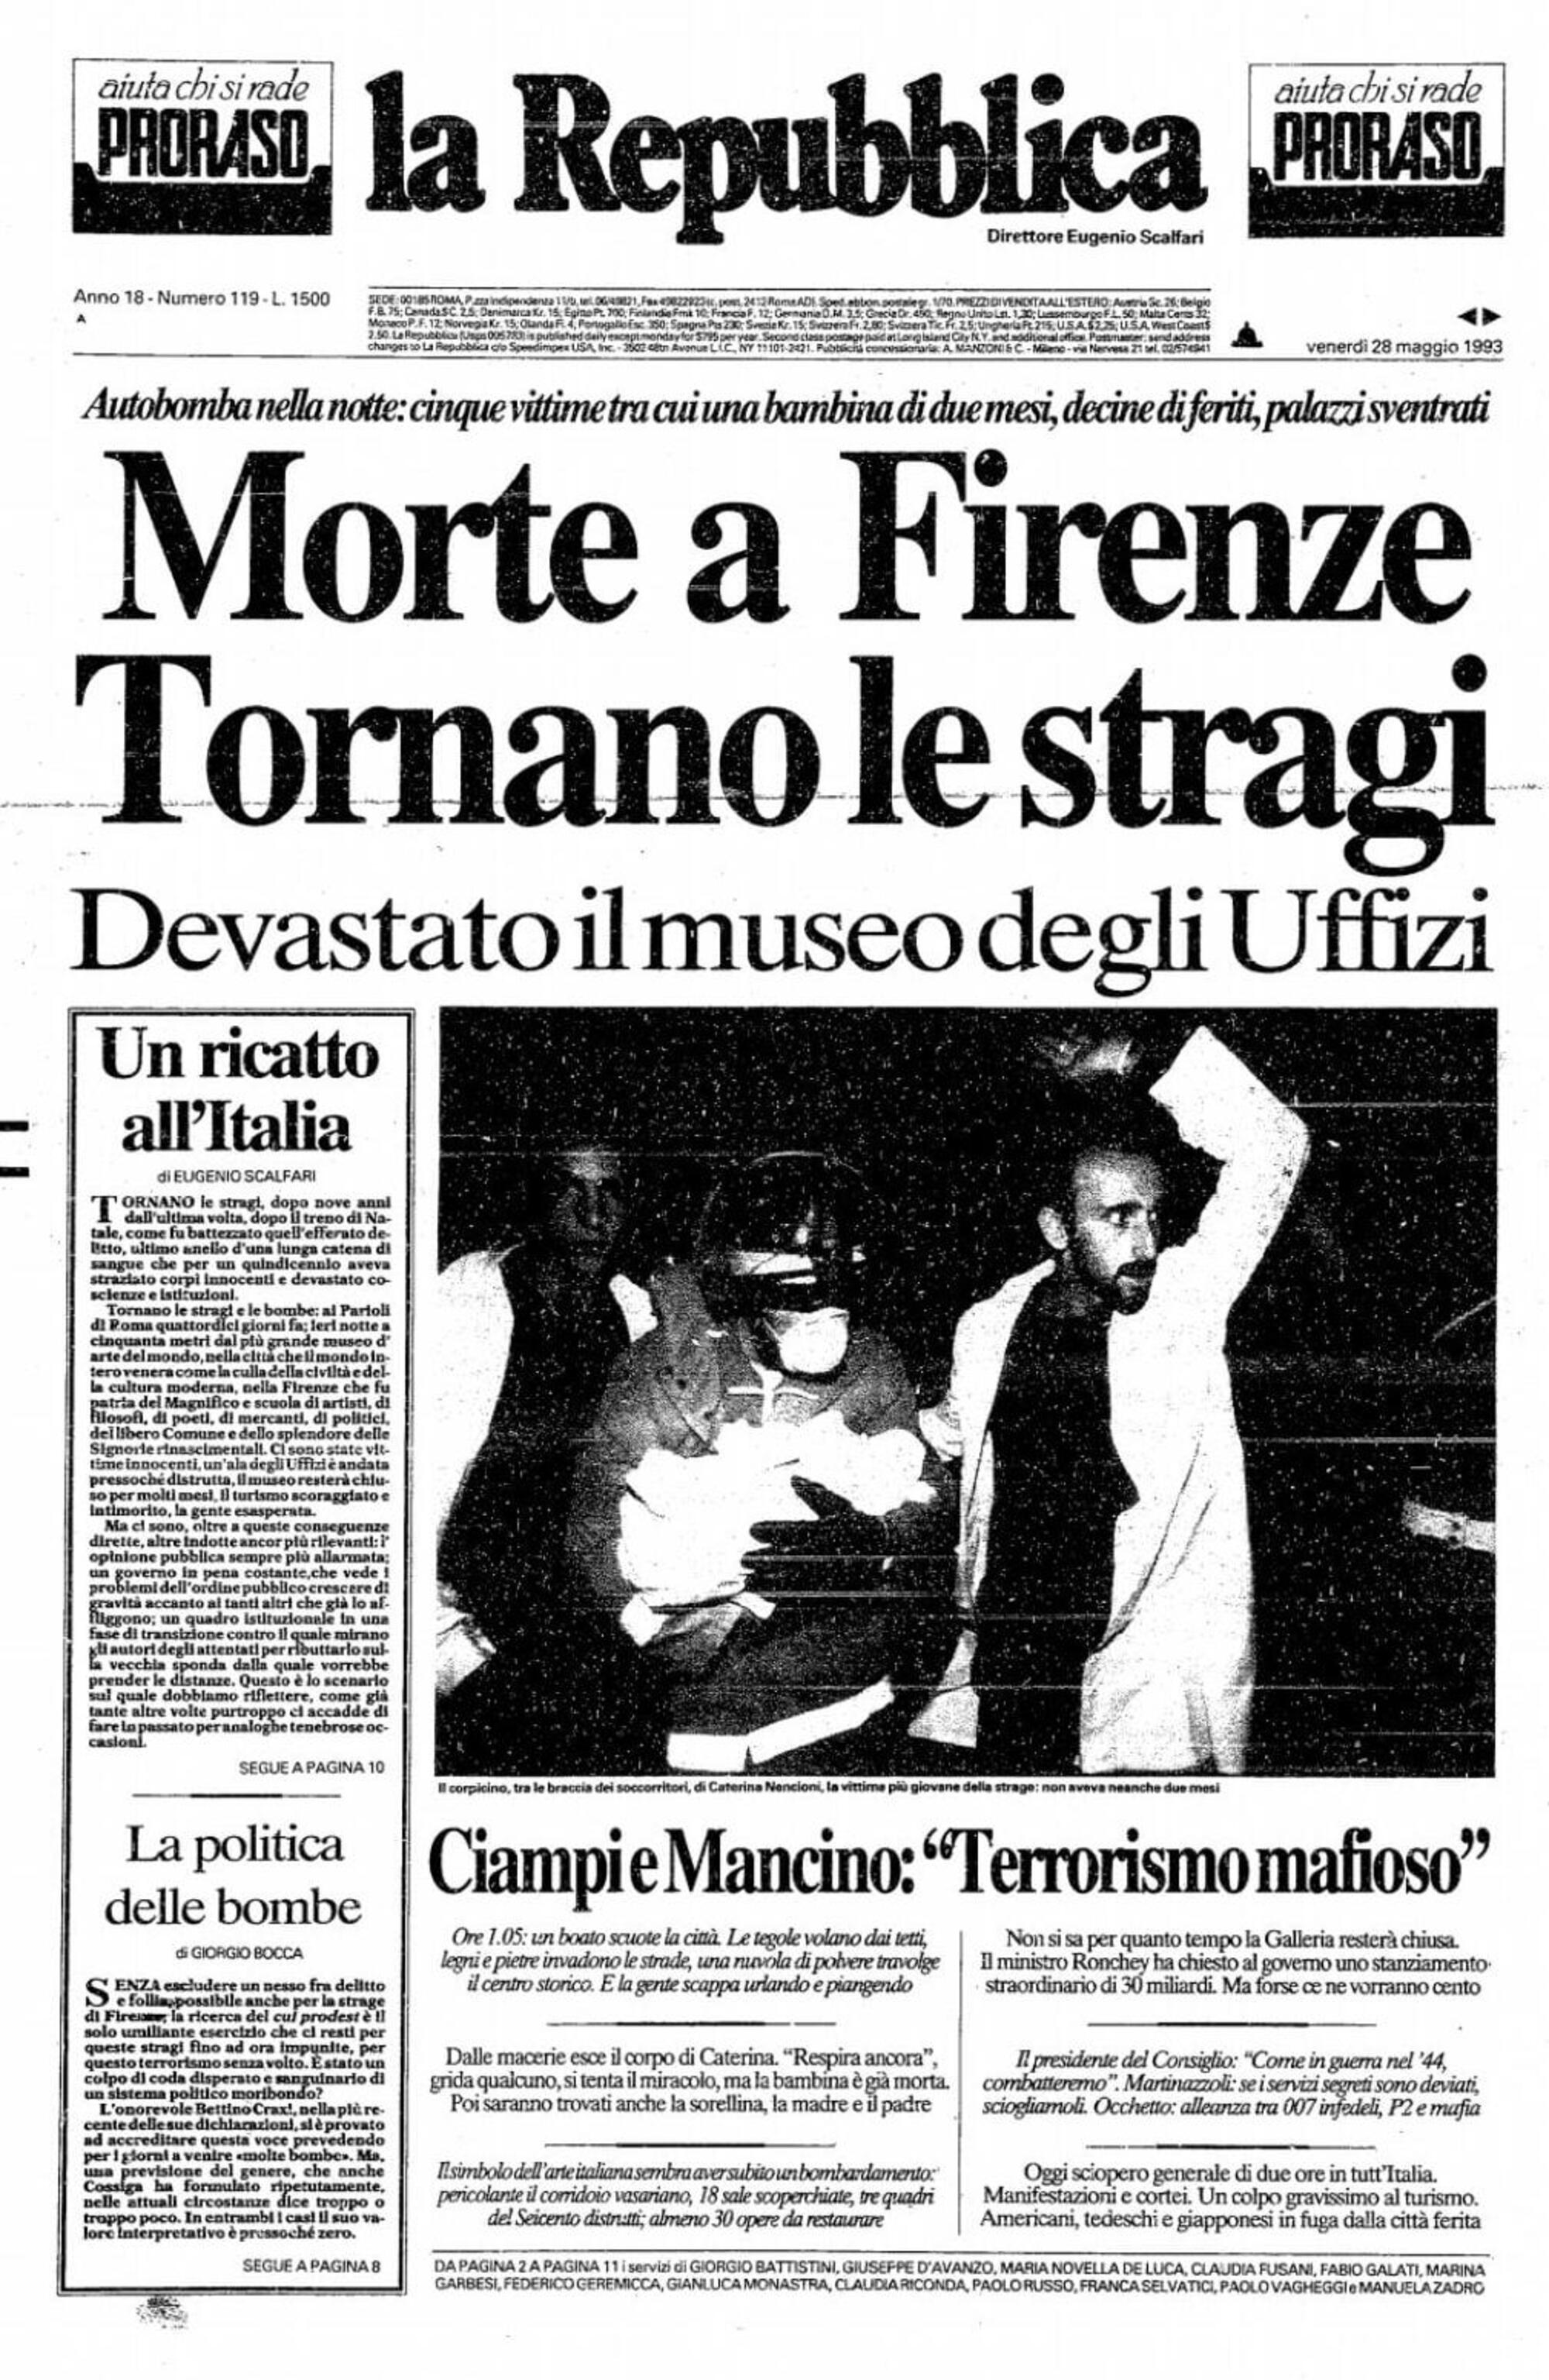 La prima pagina de La Repubblica dopo la strage